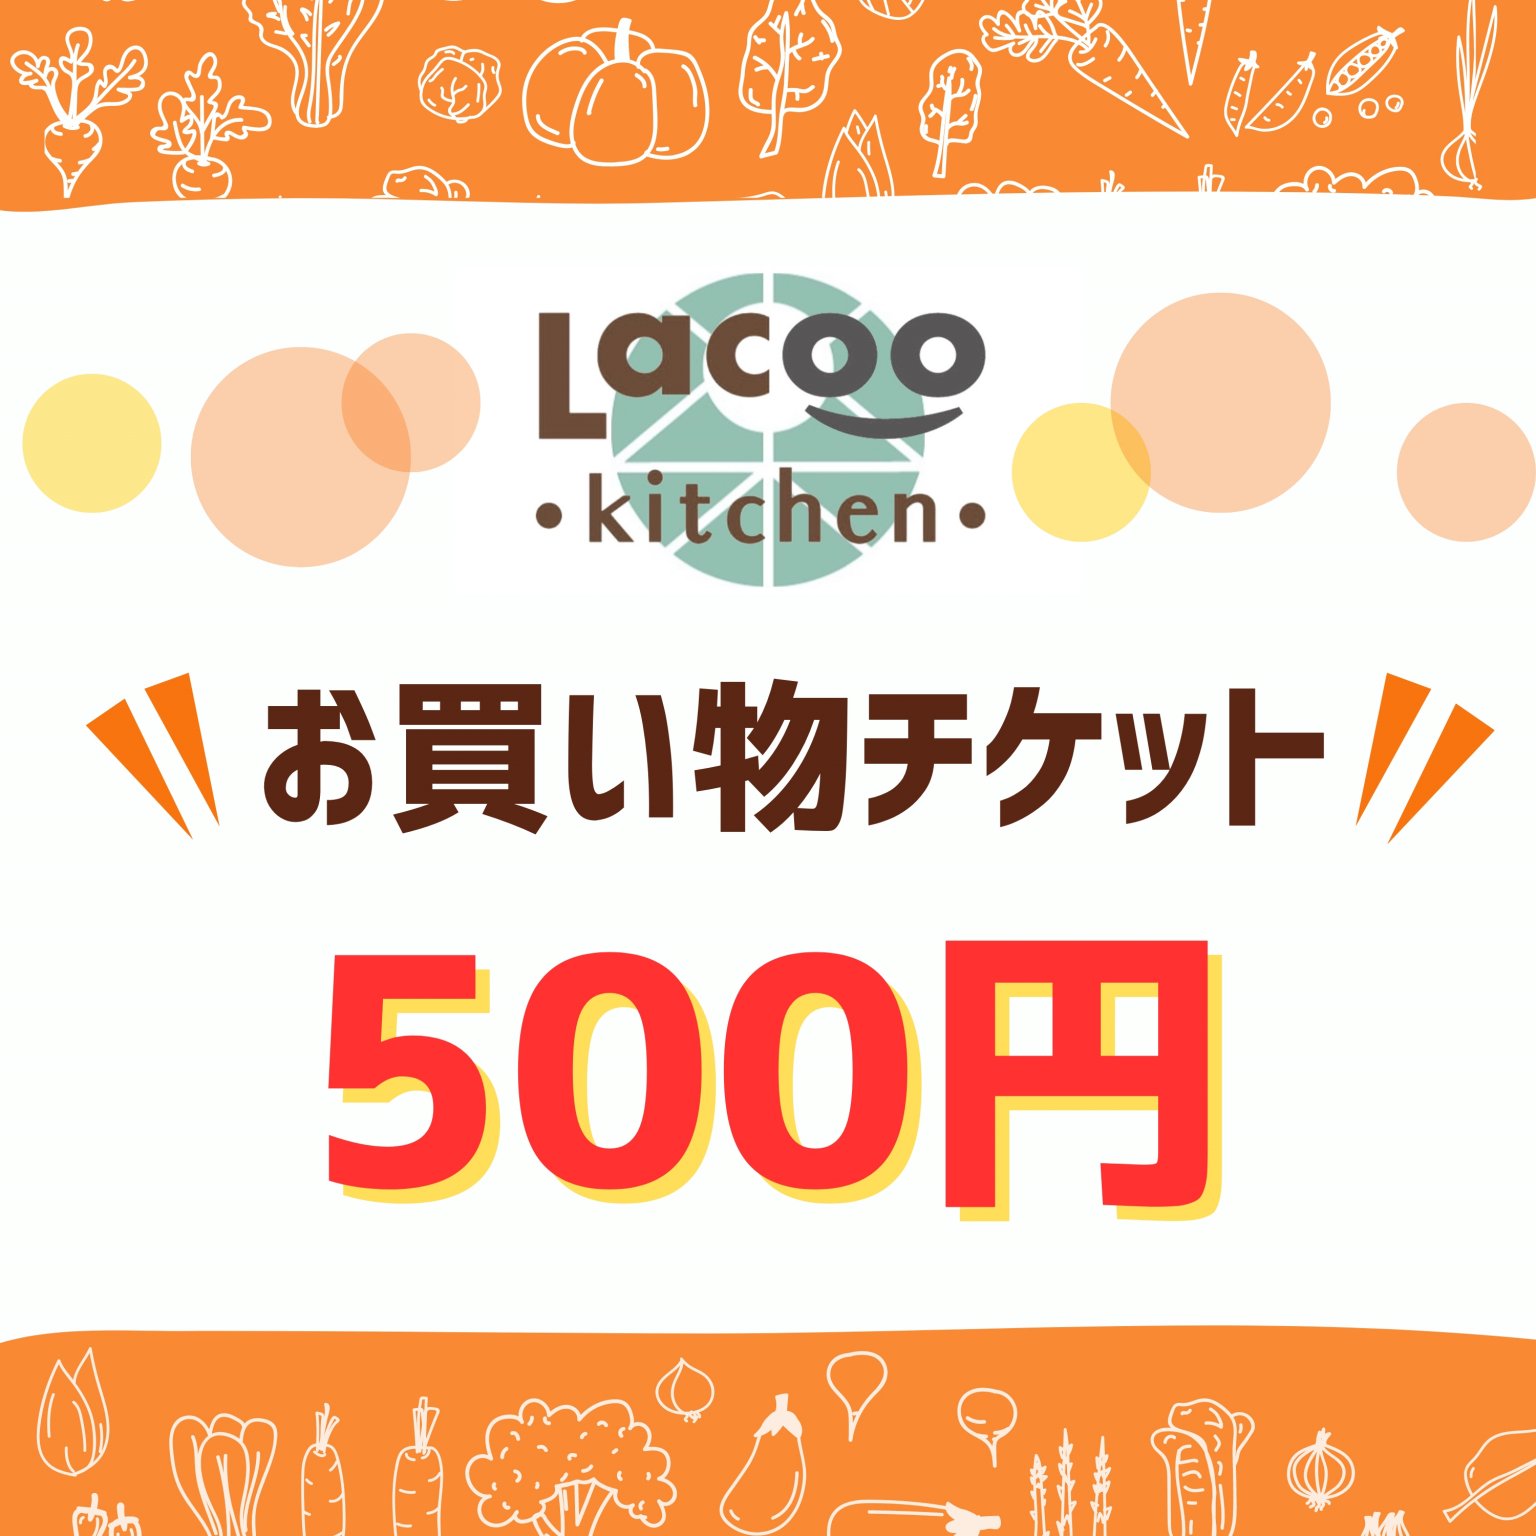 500円お買い物チケット(Lacoo kitchen...)